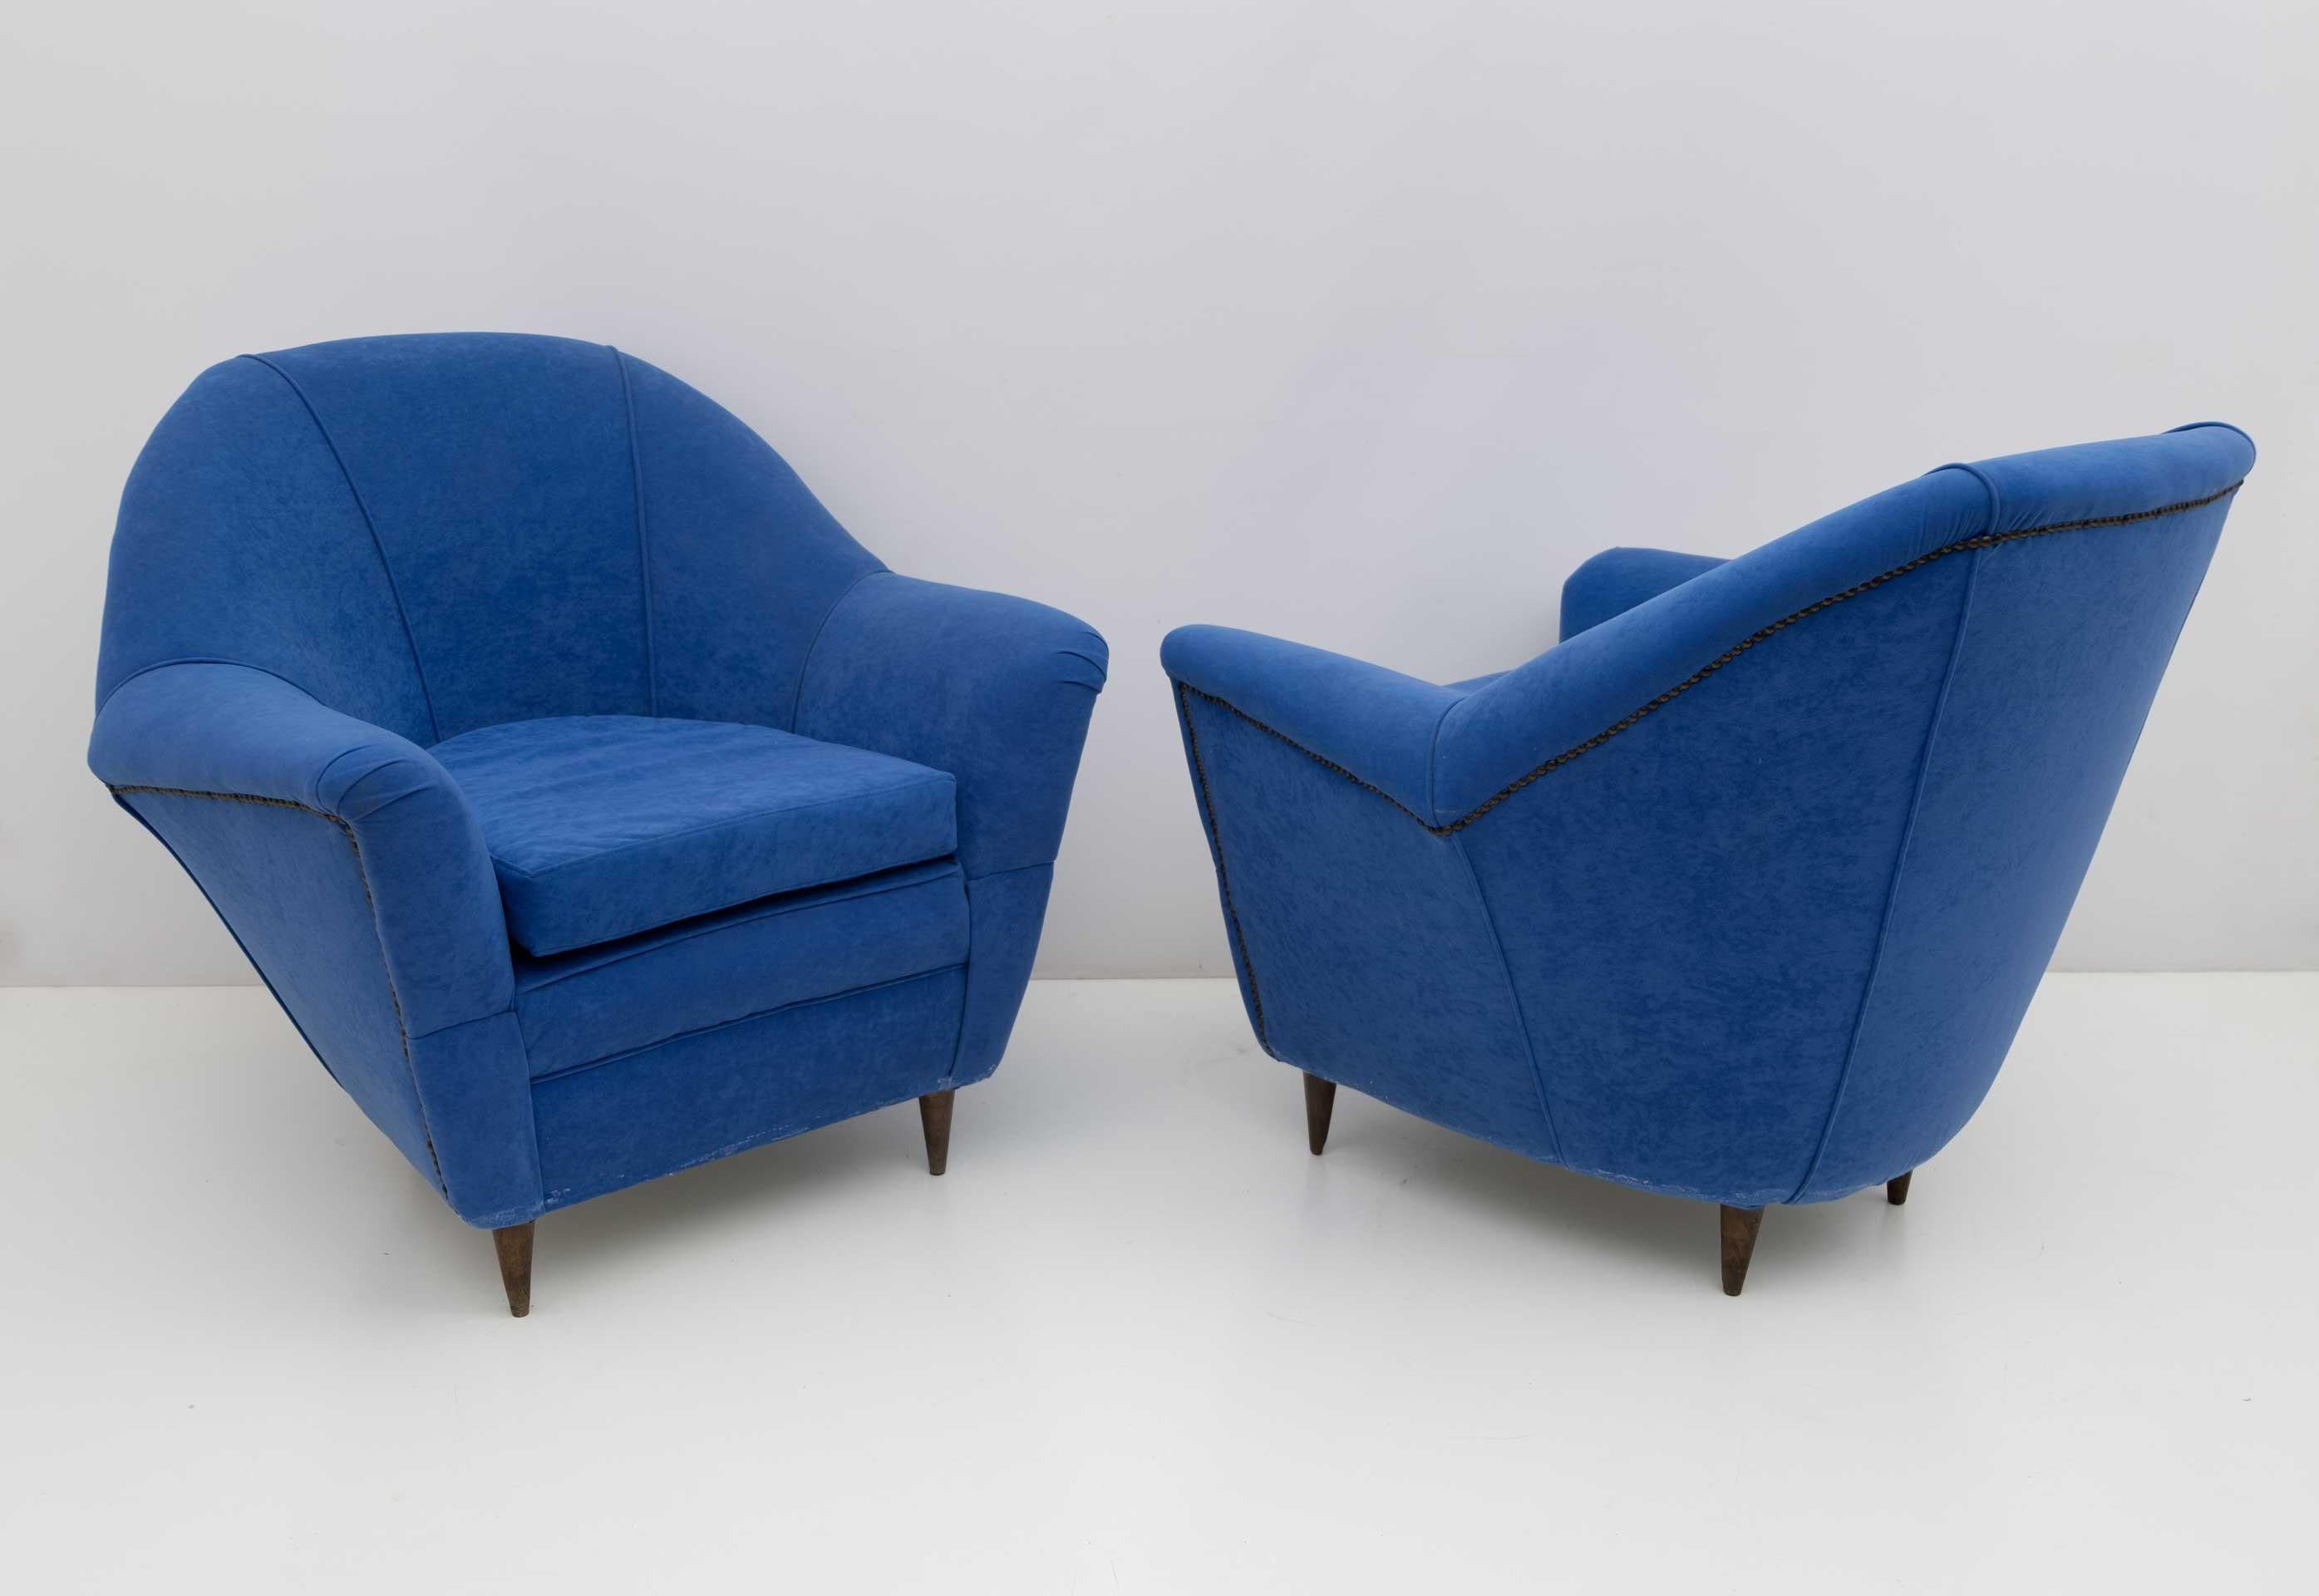 Paire de fauteuils iconiques conçus par Ico Parisi pour Ariberto Colombo Cantù.
Très élégant et confortable, avec une sellerie refaite ces dernières années, mais une nouvelle sellerie est recommandée.